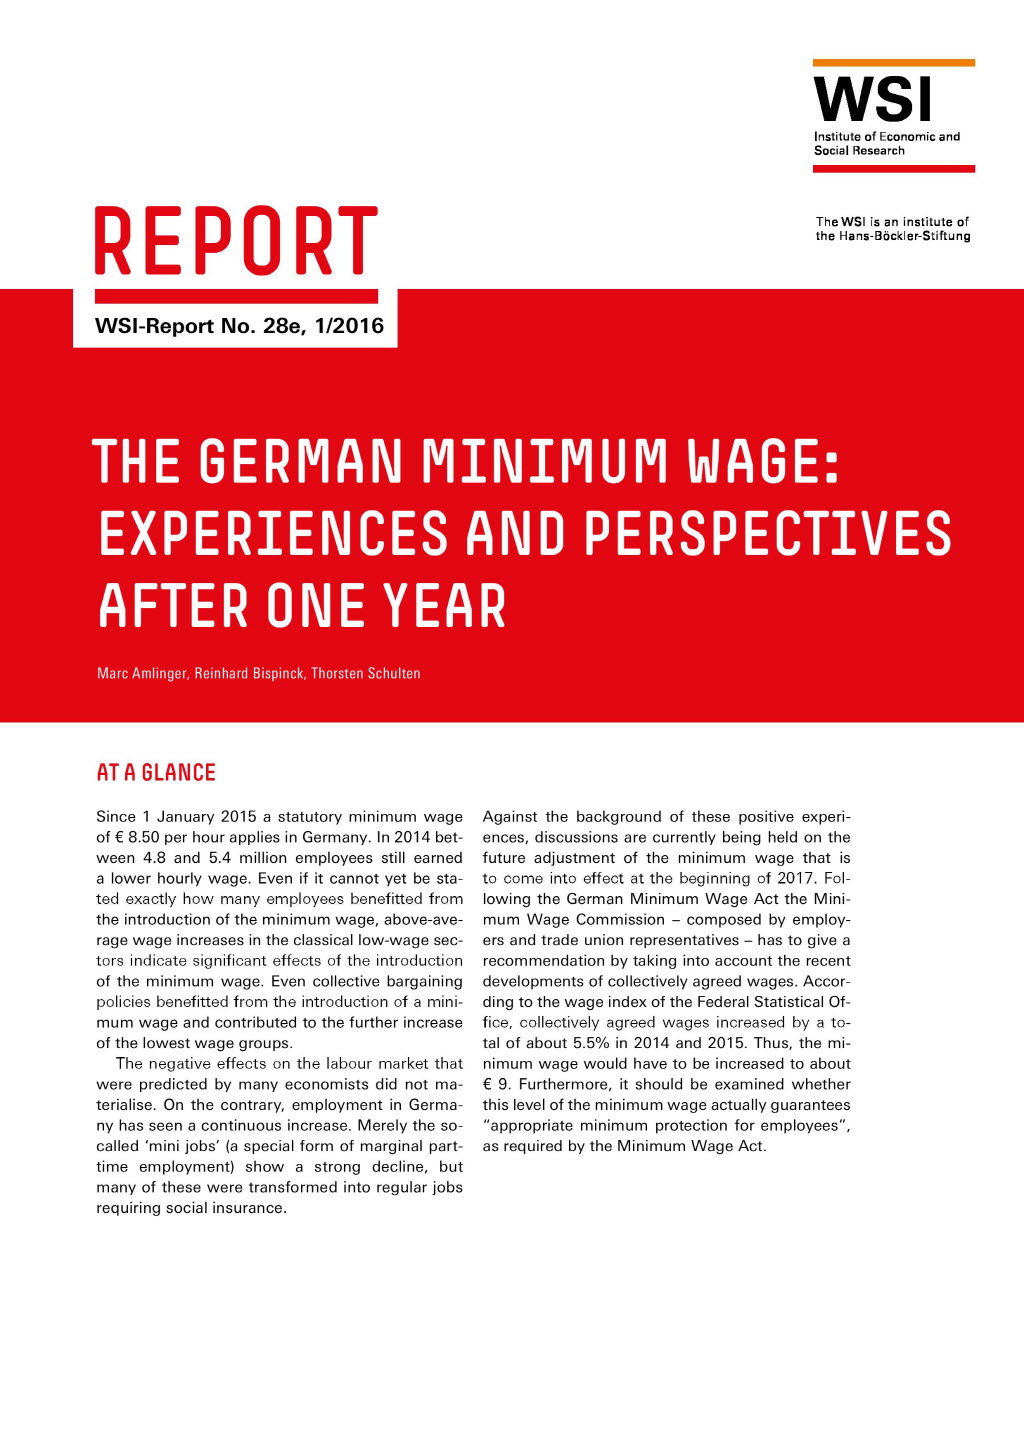 The German Minimum Wage Wirtschafts und Sozialwissenschaftliches